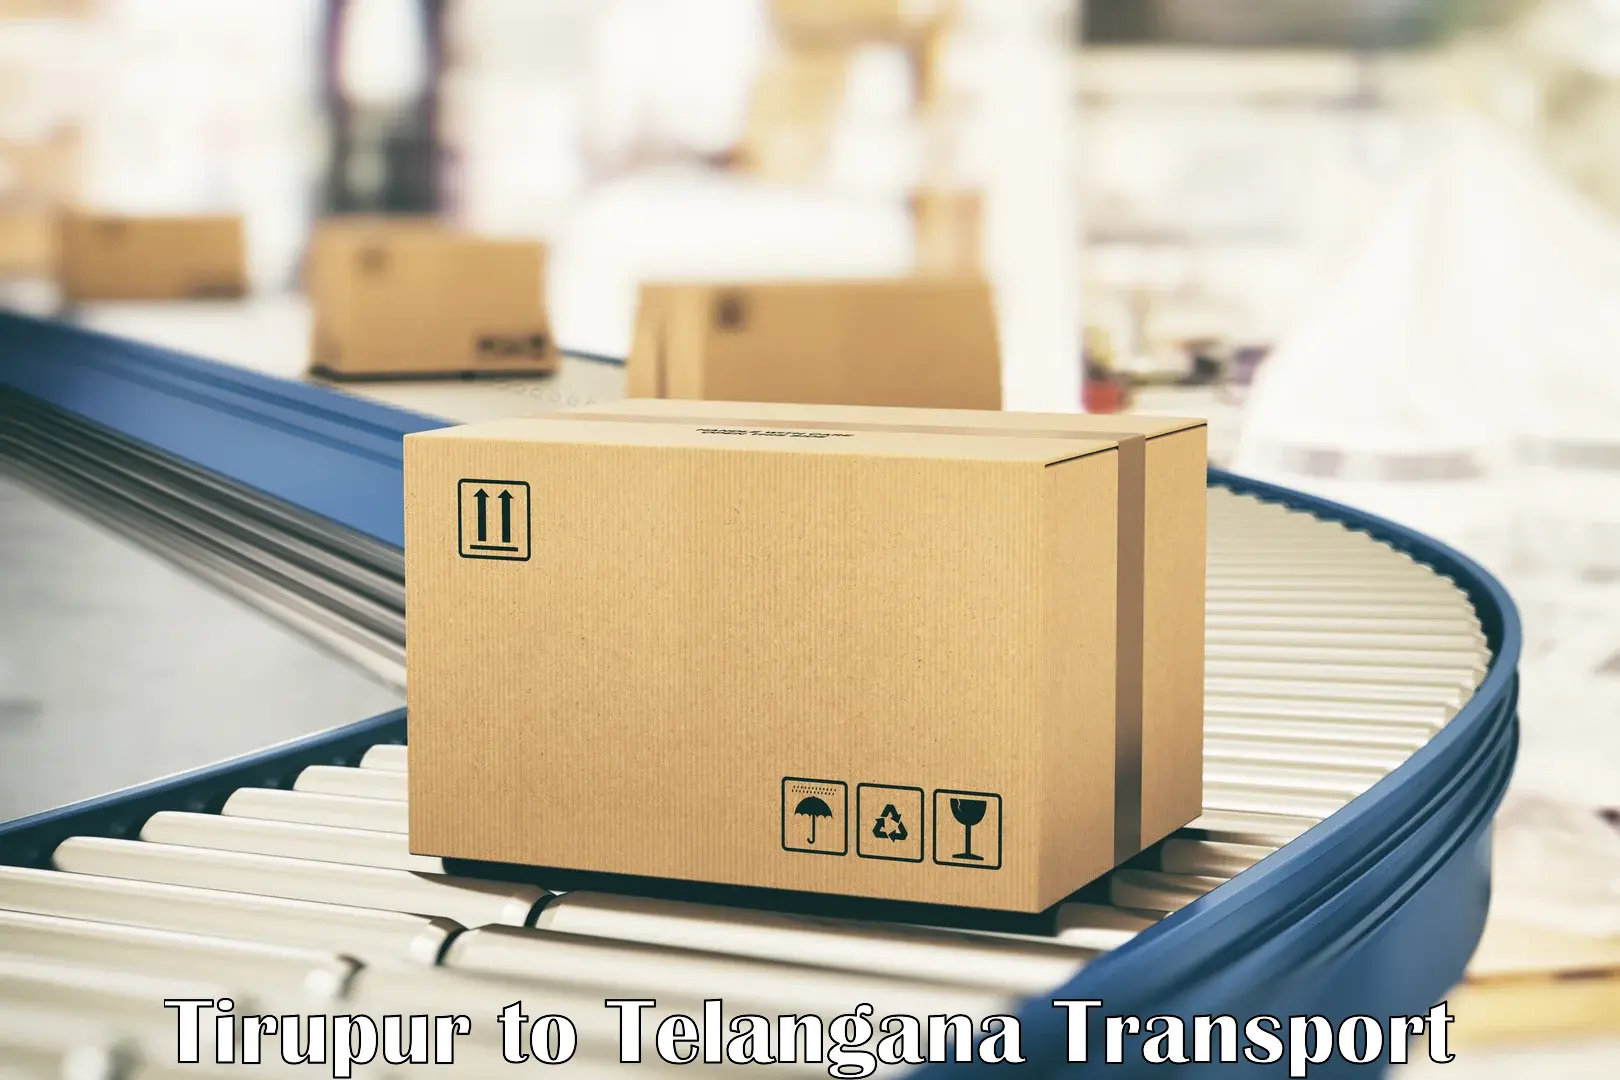 Cargo transport services Tirupur to Madhavaram